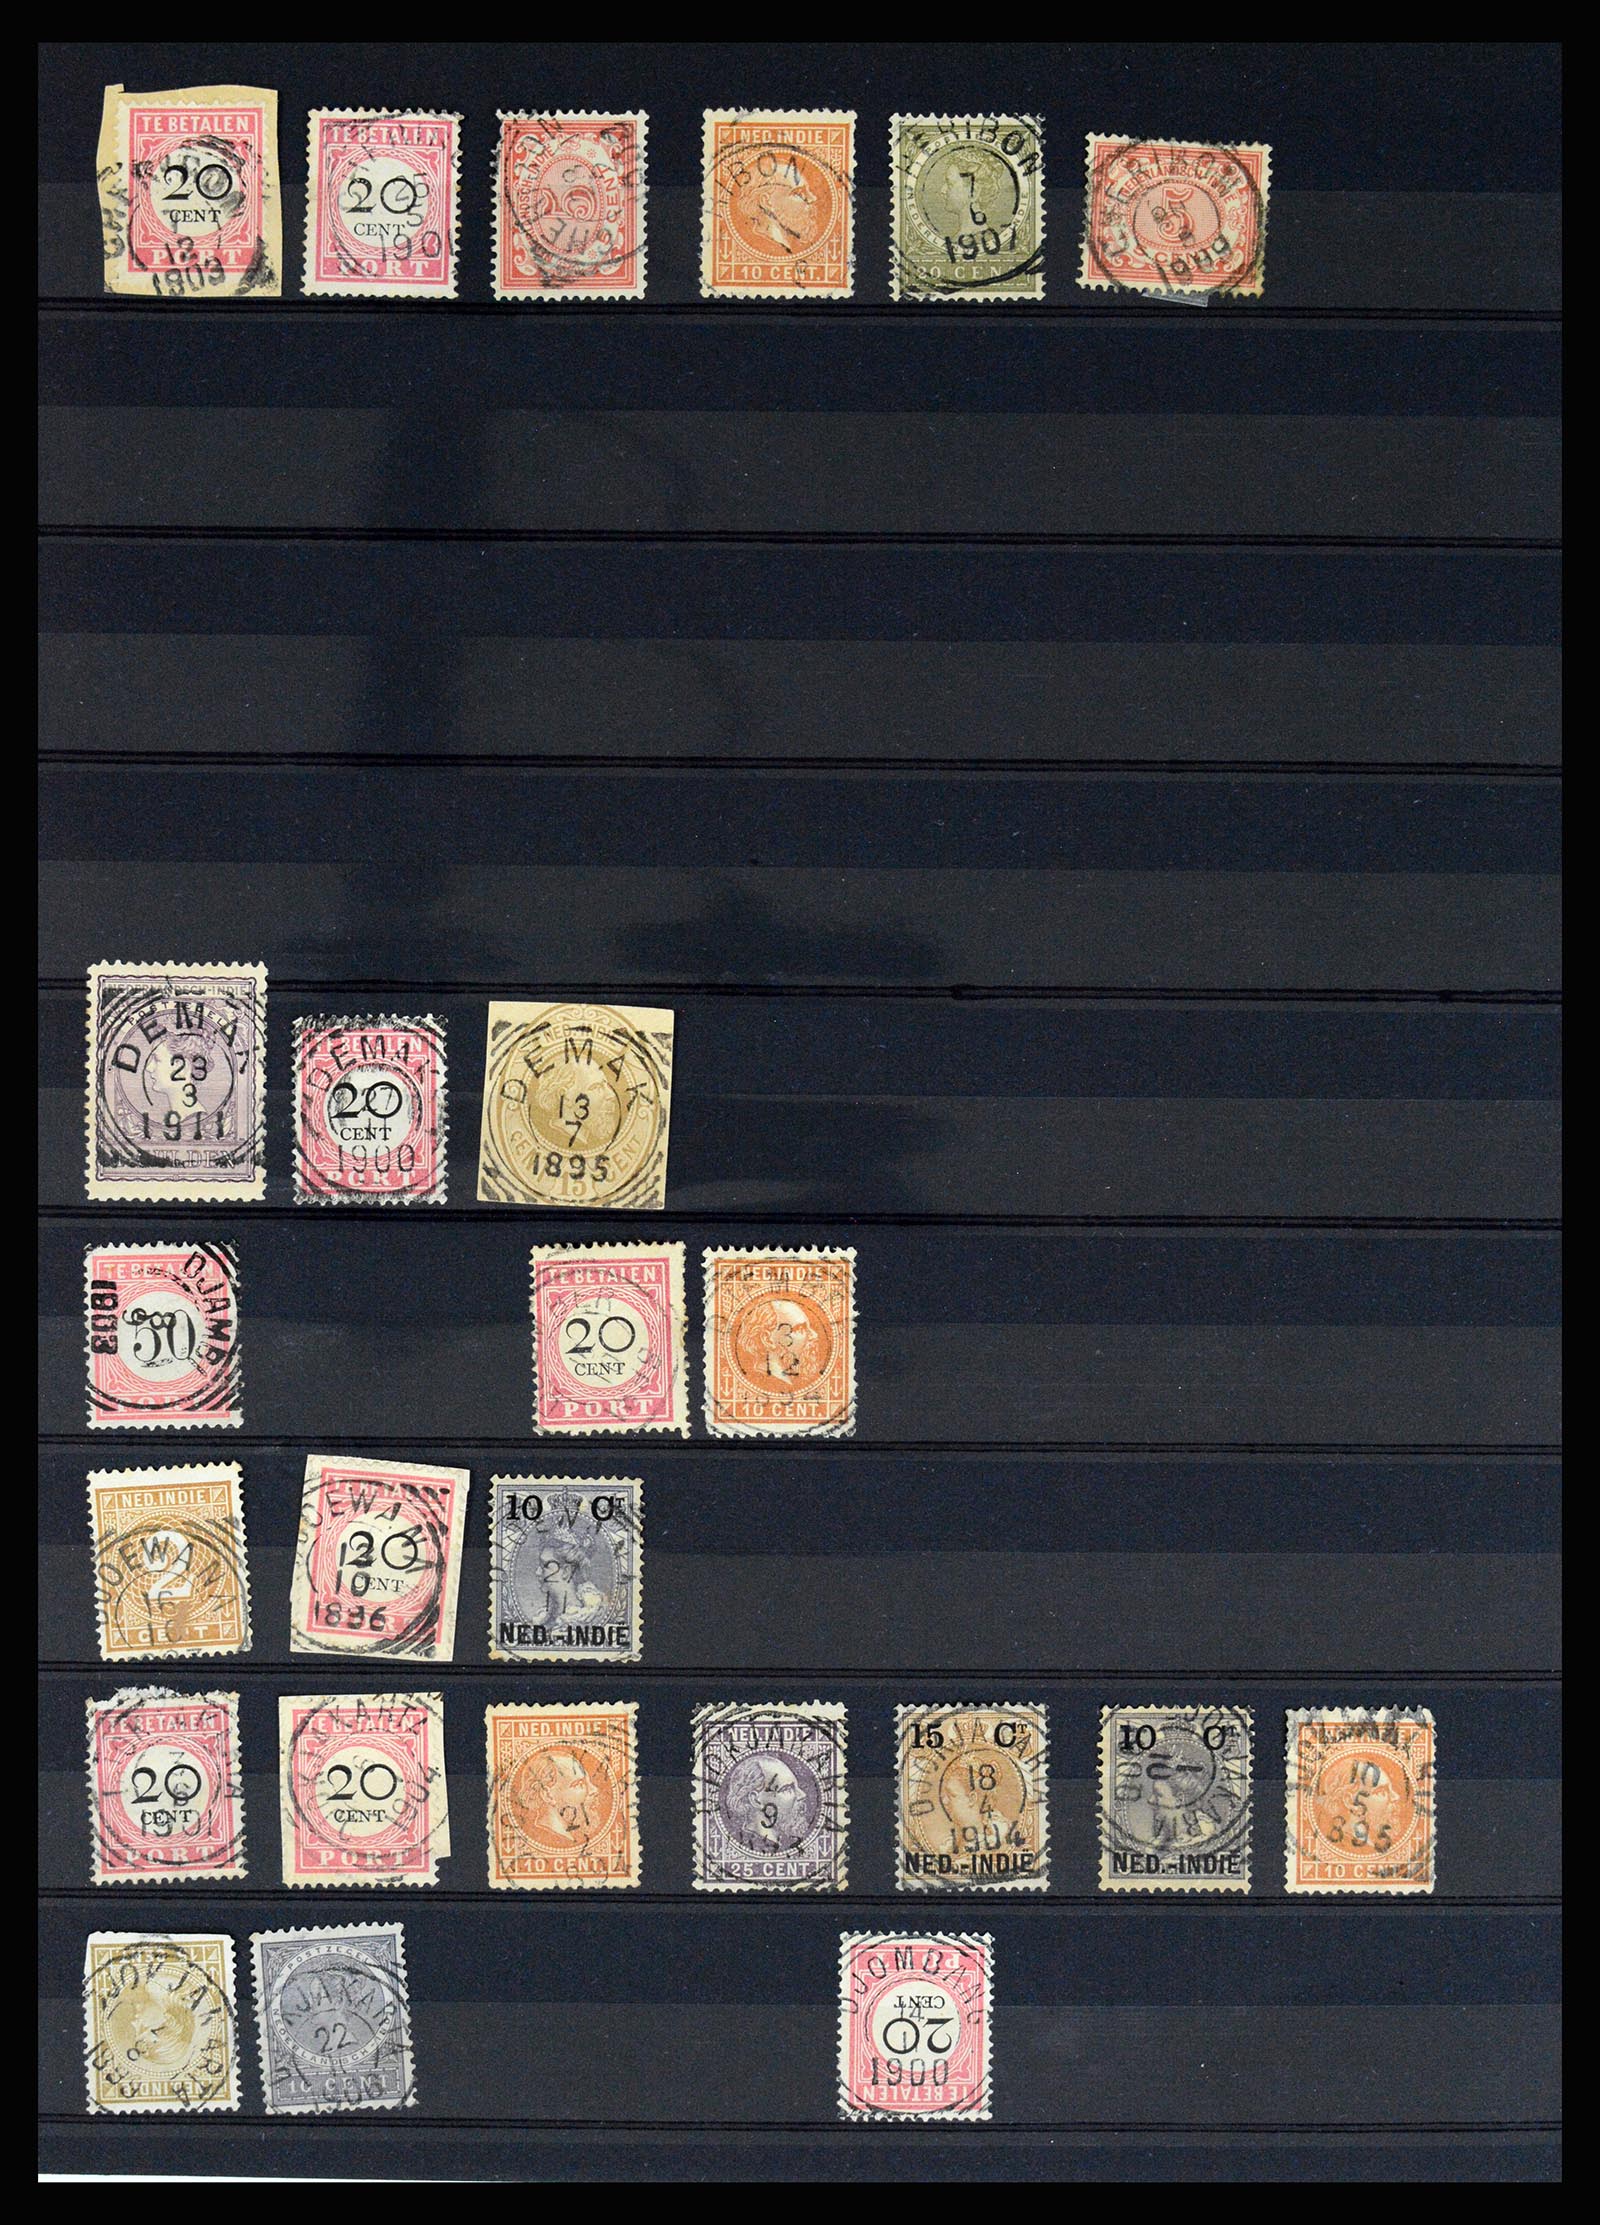 36512 084 - Stamp collection 36512 Nederlands Indië stempels 1872-1930.